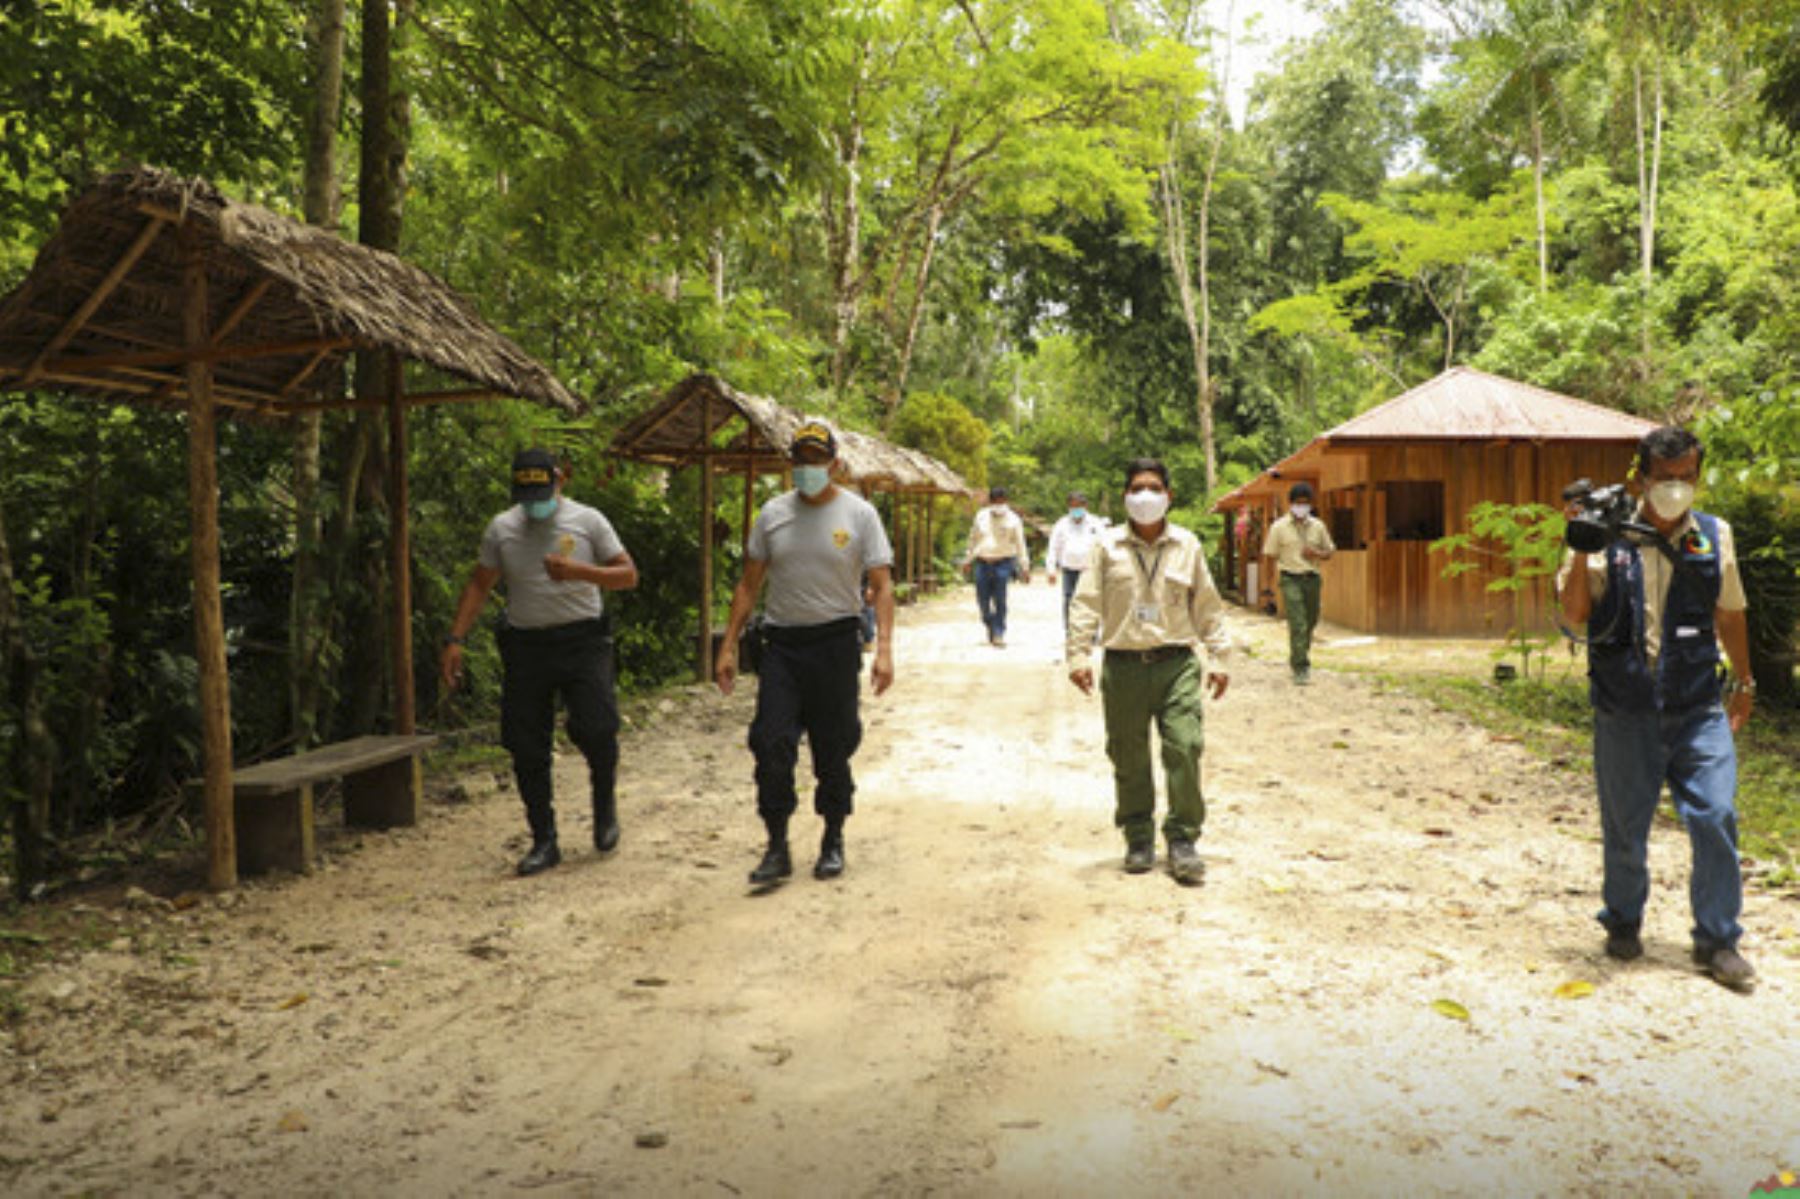 Los guías del Parque Nacional Tingo María tuvieron a su cargo pequeños grupos de visitantes para mostrarles los principales atractivos turísticos. Foto: ANDINA/Difusión